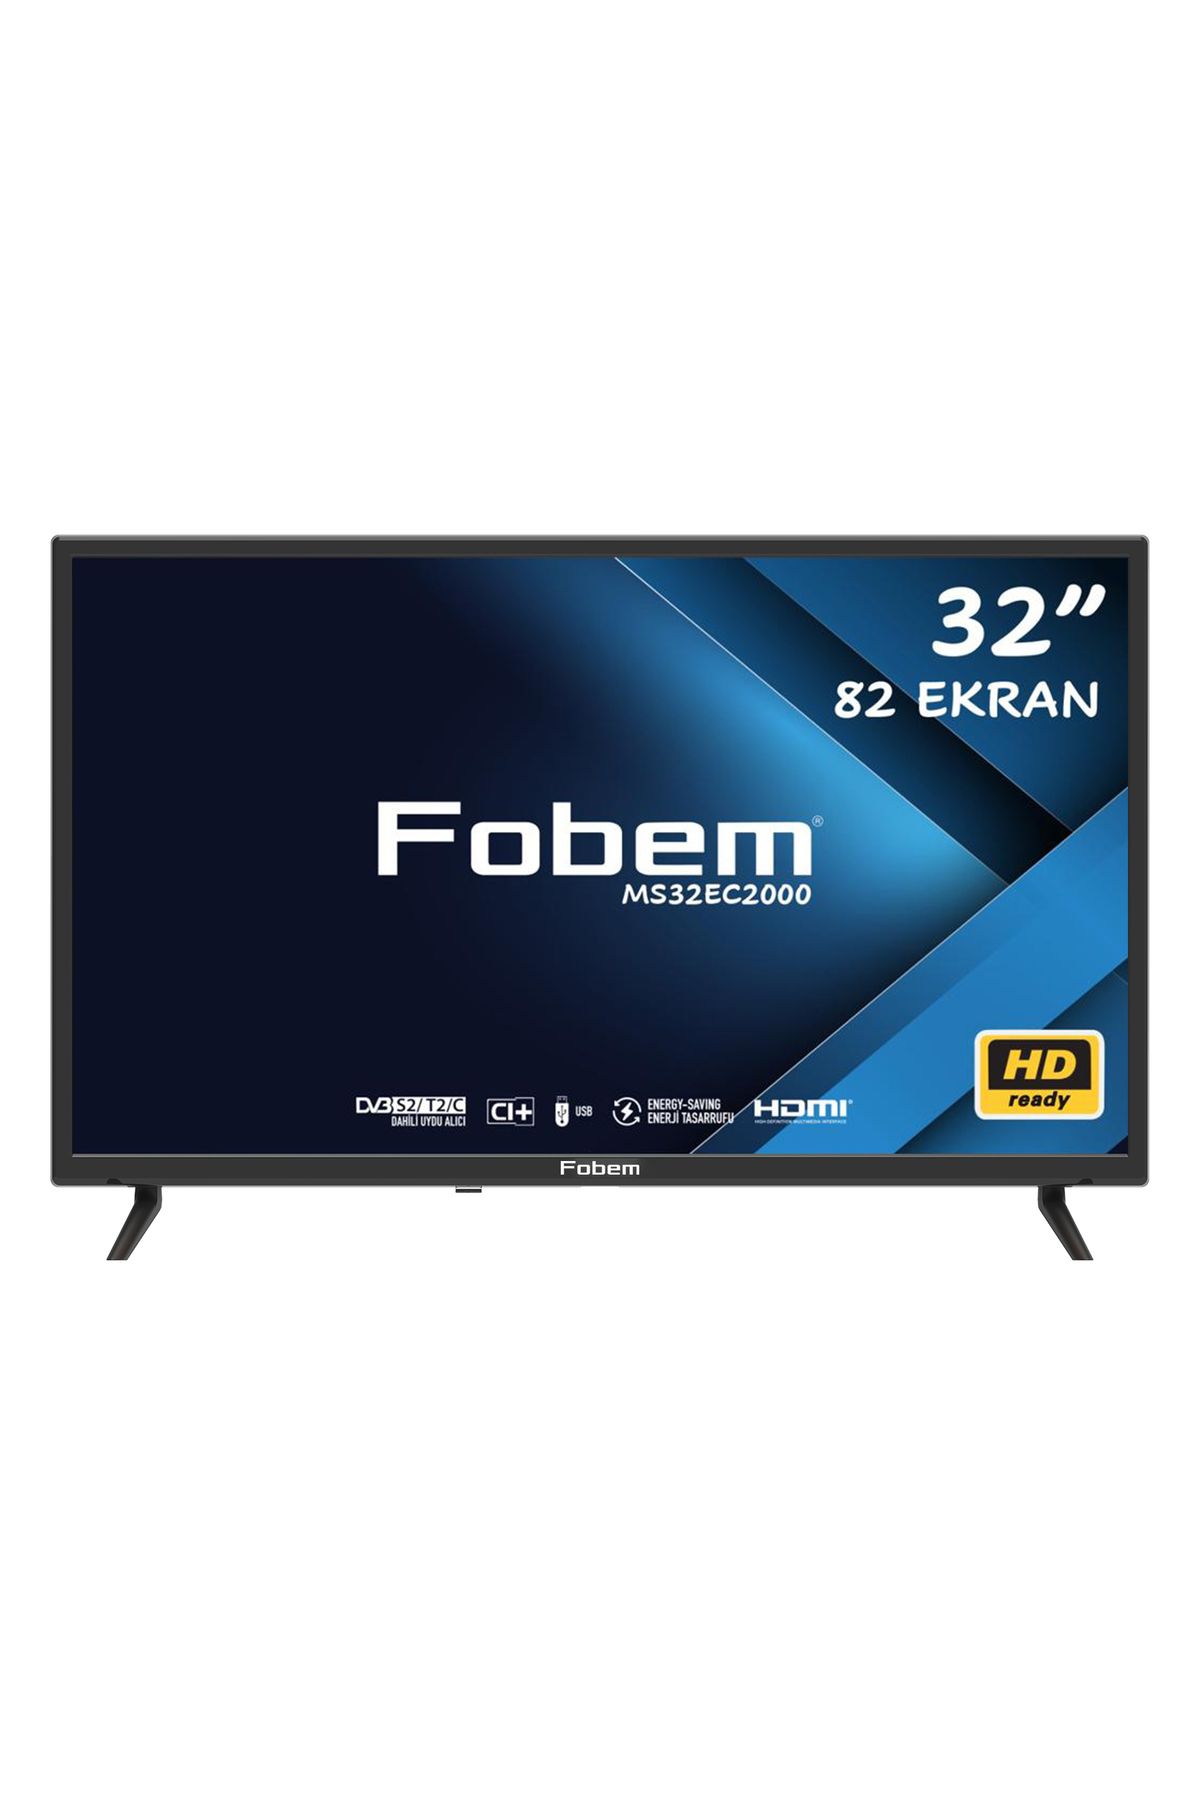 FOBEM MS32EC2000 32'' 82 Ekran Dahili Uydu Alıcılı HD Ready LED TV